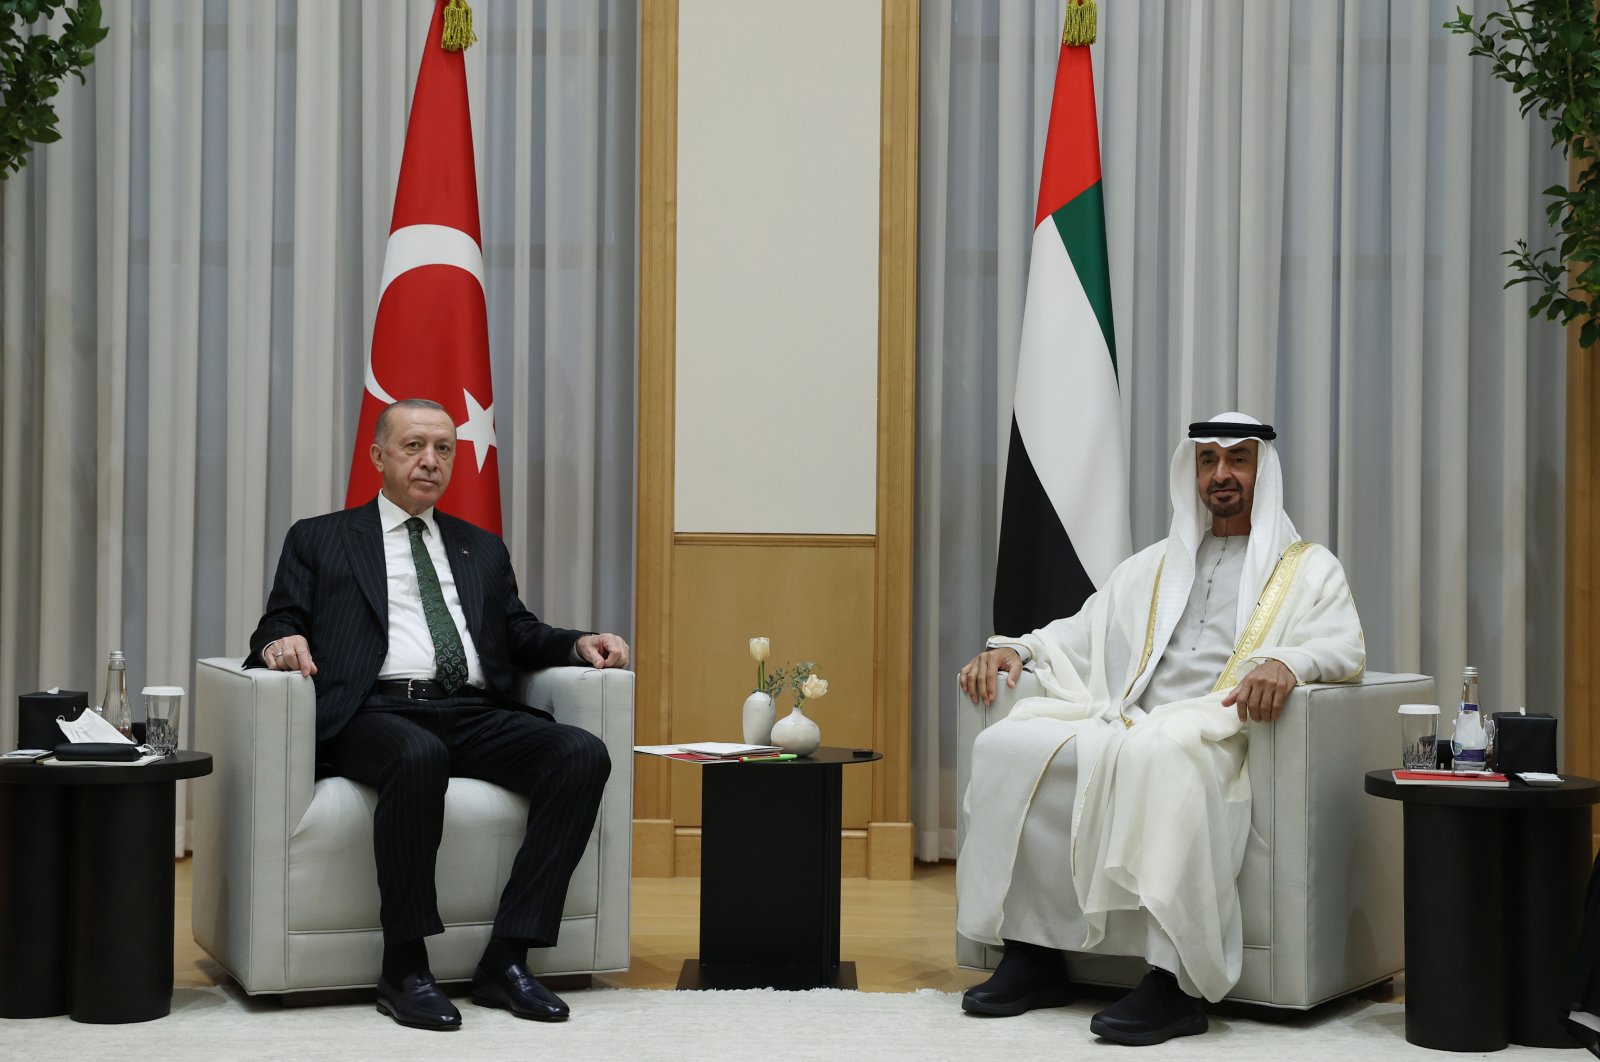 Tổng thống Erdoğan gặp Thái tử UAE Abu Dhabi Sheikh Mohammed bin Zayed Al Nahyan ngày 14-2-2022. Ảnh: EPA